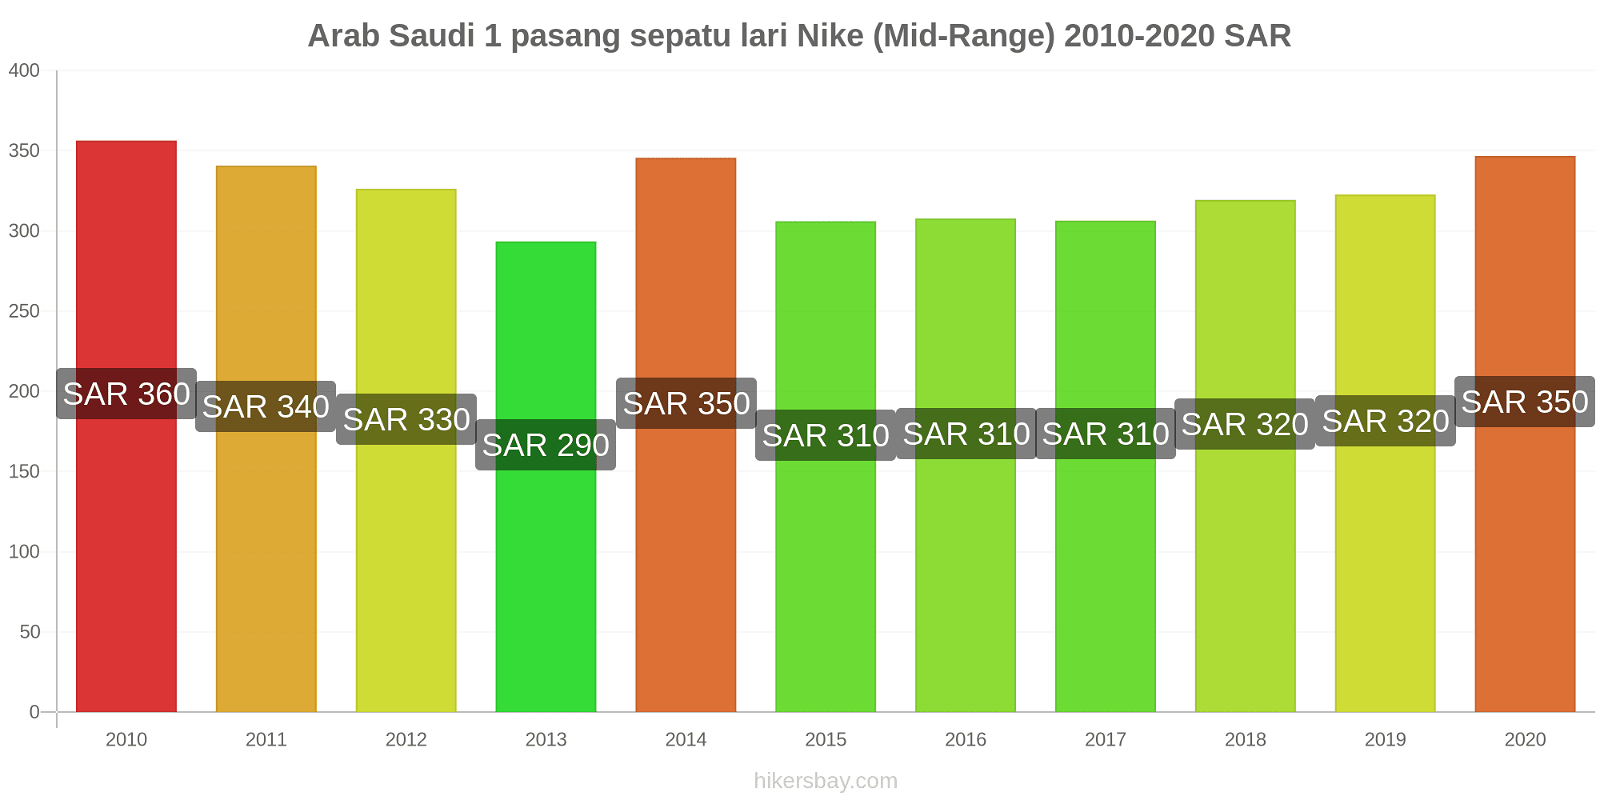 Arab Saudi perubahan harga 1 pasang sepatu lari Nike (Mid-Range) hikersbay.com